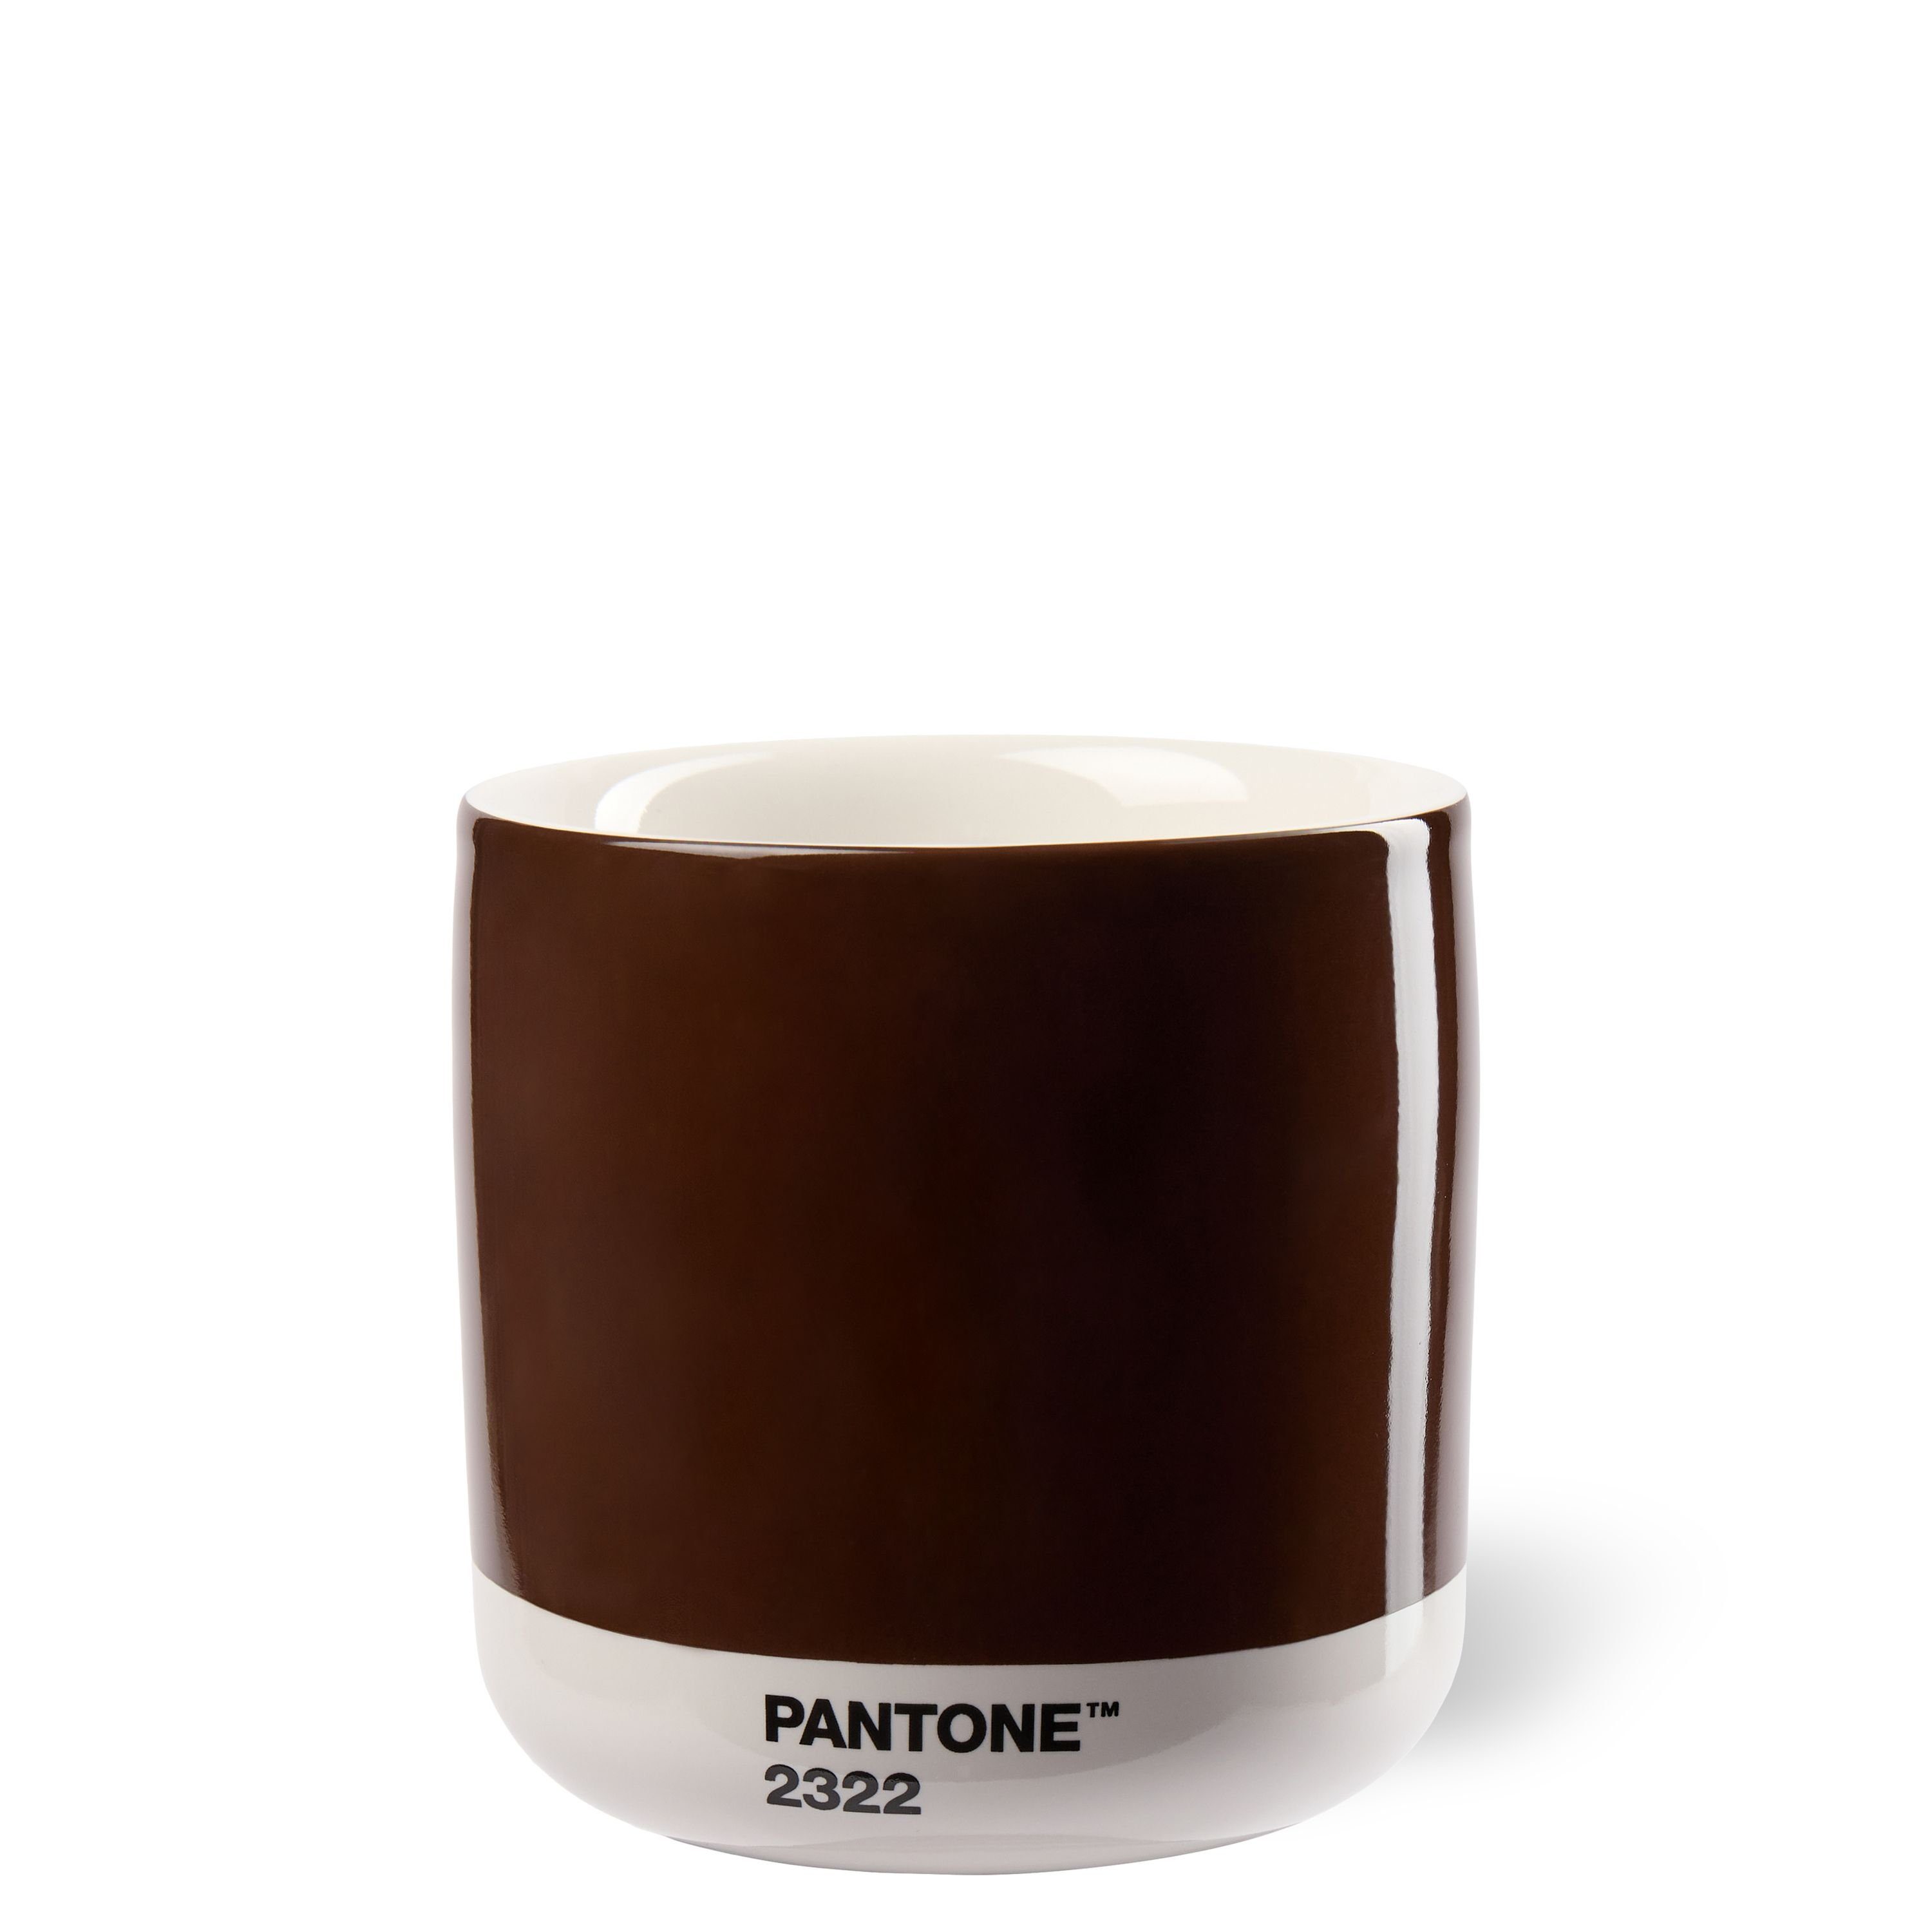 PANTONE Kaffeeservice, PANTONE Porzellan Thermobecher Latte Macchiato, 220 ml Brown 2322